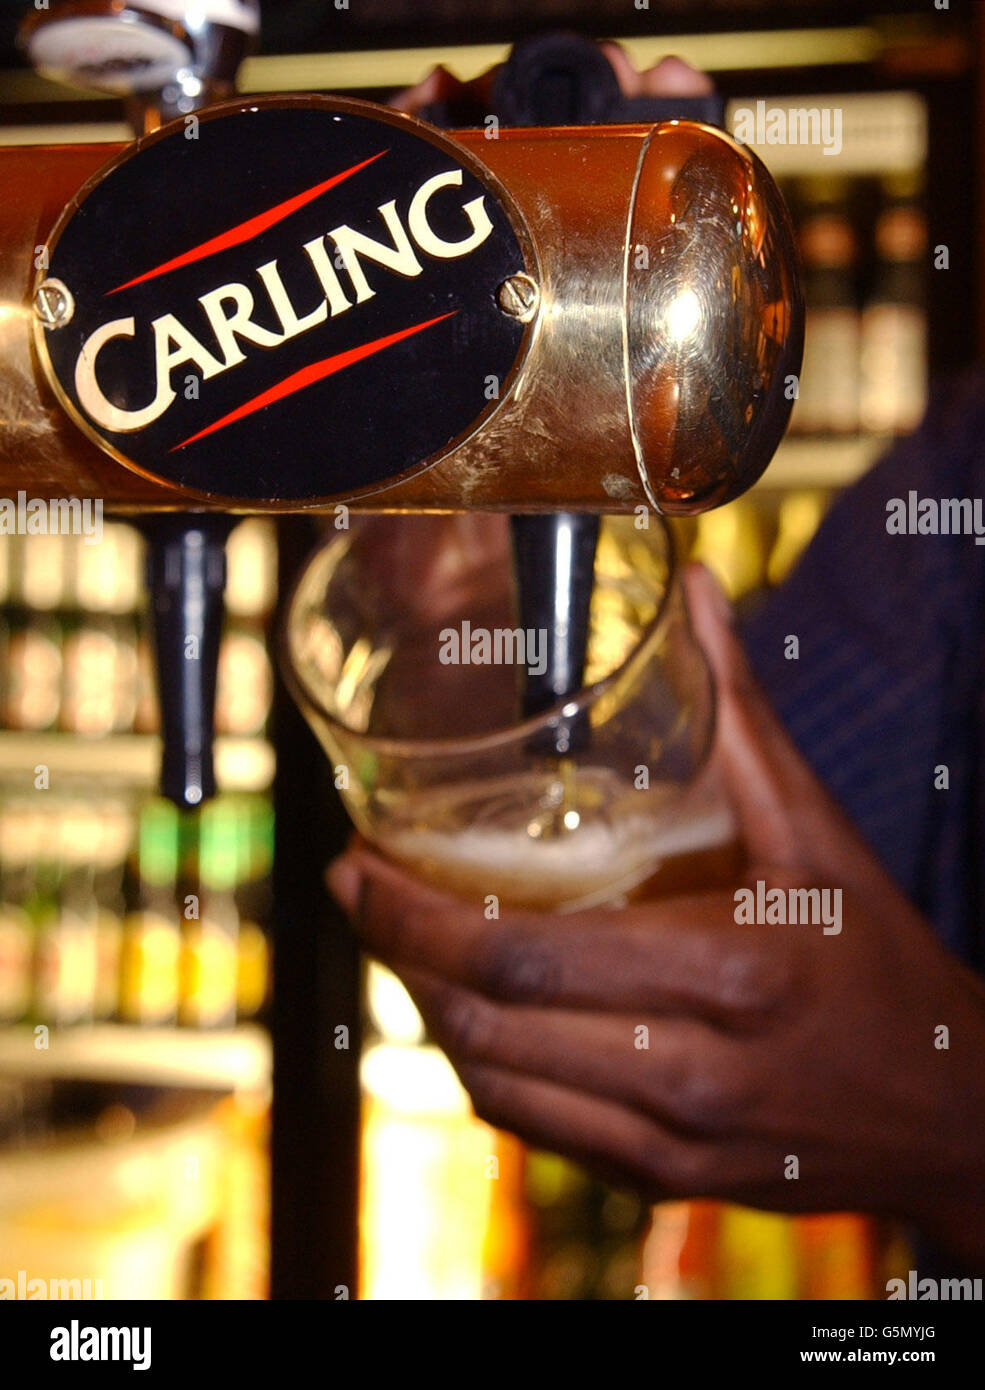 Il colosso belga Interbrew ha venduto i produttori di birra Carling al gruppo americano Adolph Coors in un accordo di 1.2 miliardi di euro. Interbrew - proprietaria di Stella Artois - ha acquisito Carling lo scorso anno, quando ha accettato di acquistare gli interessi di produzione del gruppo britannico Bass, ora denominato Six Continents. Coors, la più famosa per la sua lager eponimo, è stata fondata nel 1873 ed è una delle più grandi aziende produttrici di birra negli Stati Uniti. Visita Carling, CITTÀ della storia della Pennsylvania. Foto di Toby Melville. Foto Stock